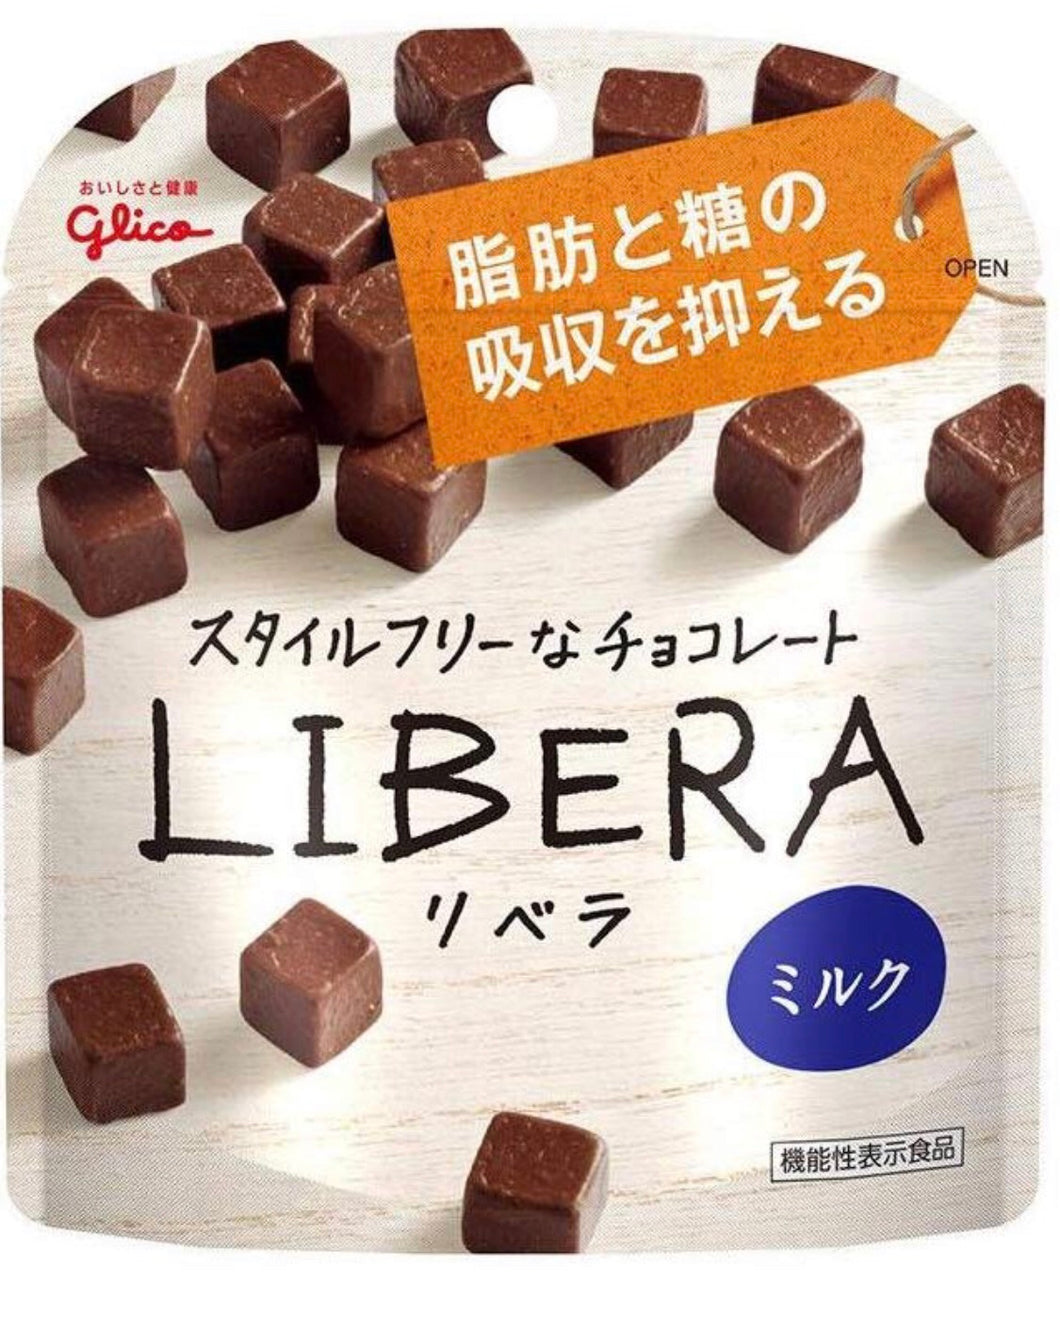 مكعبات شوكولاتة ليبرا - Yorozuya Store